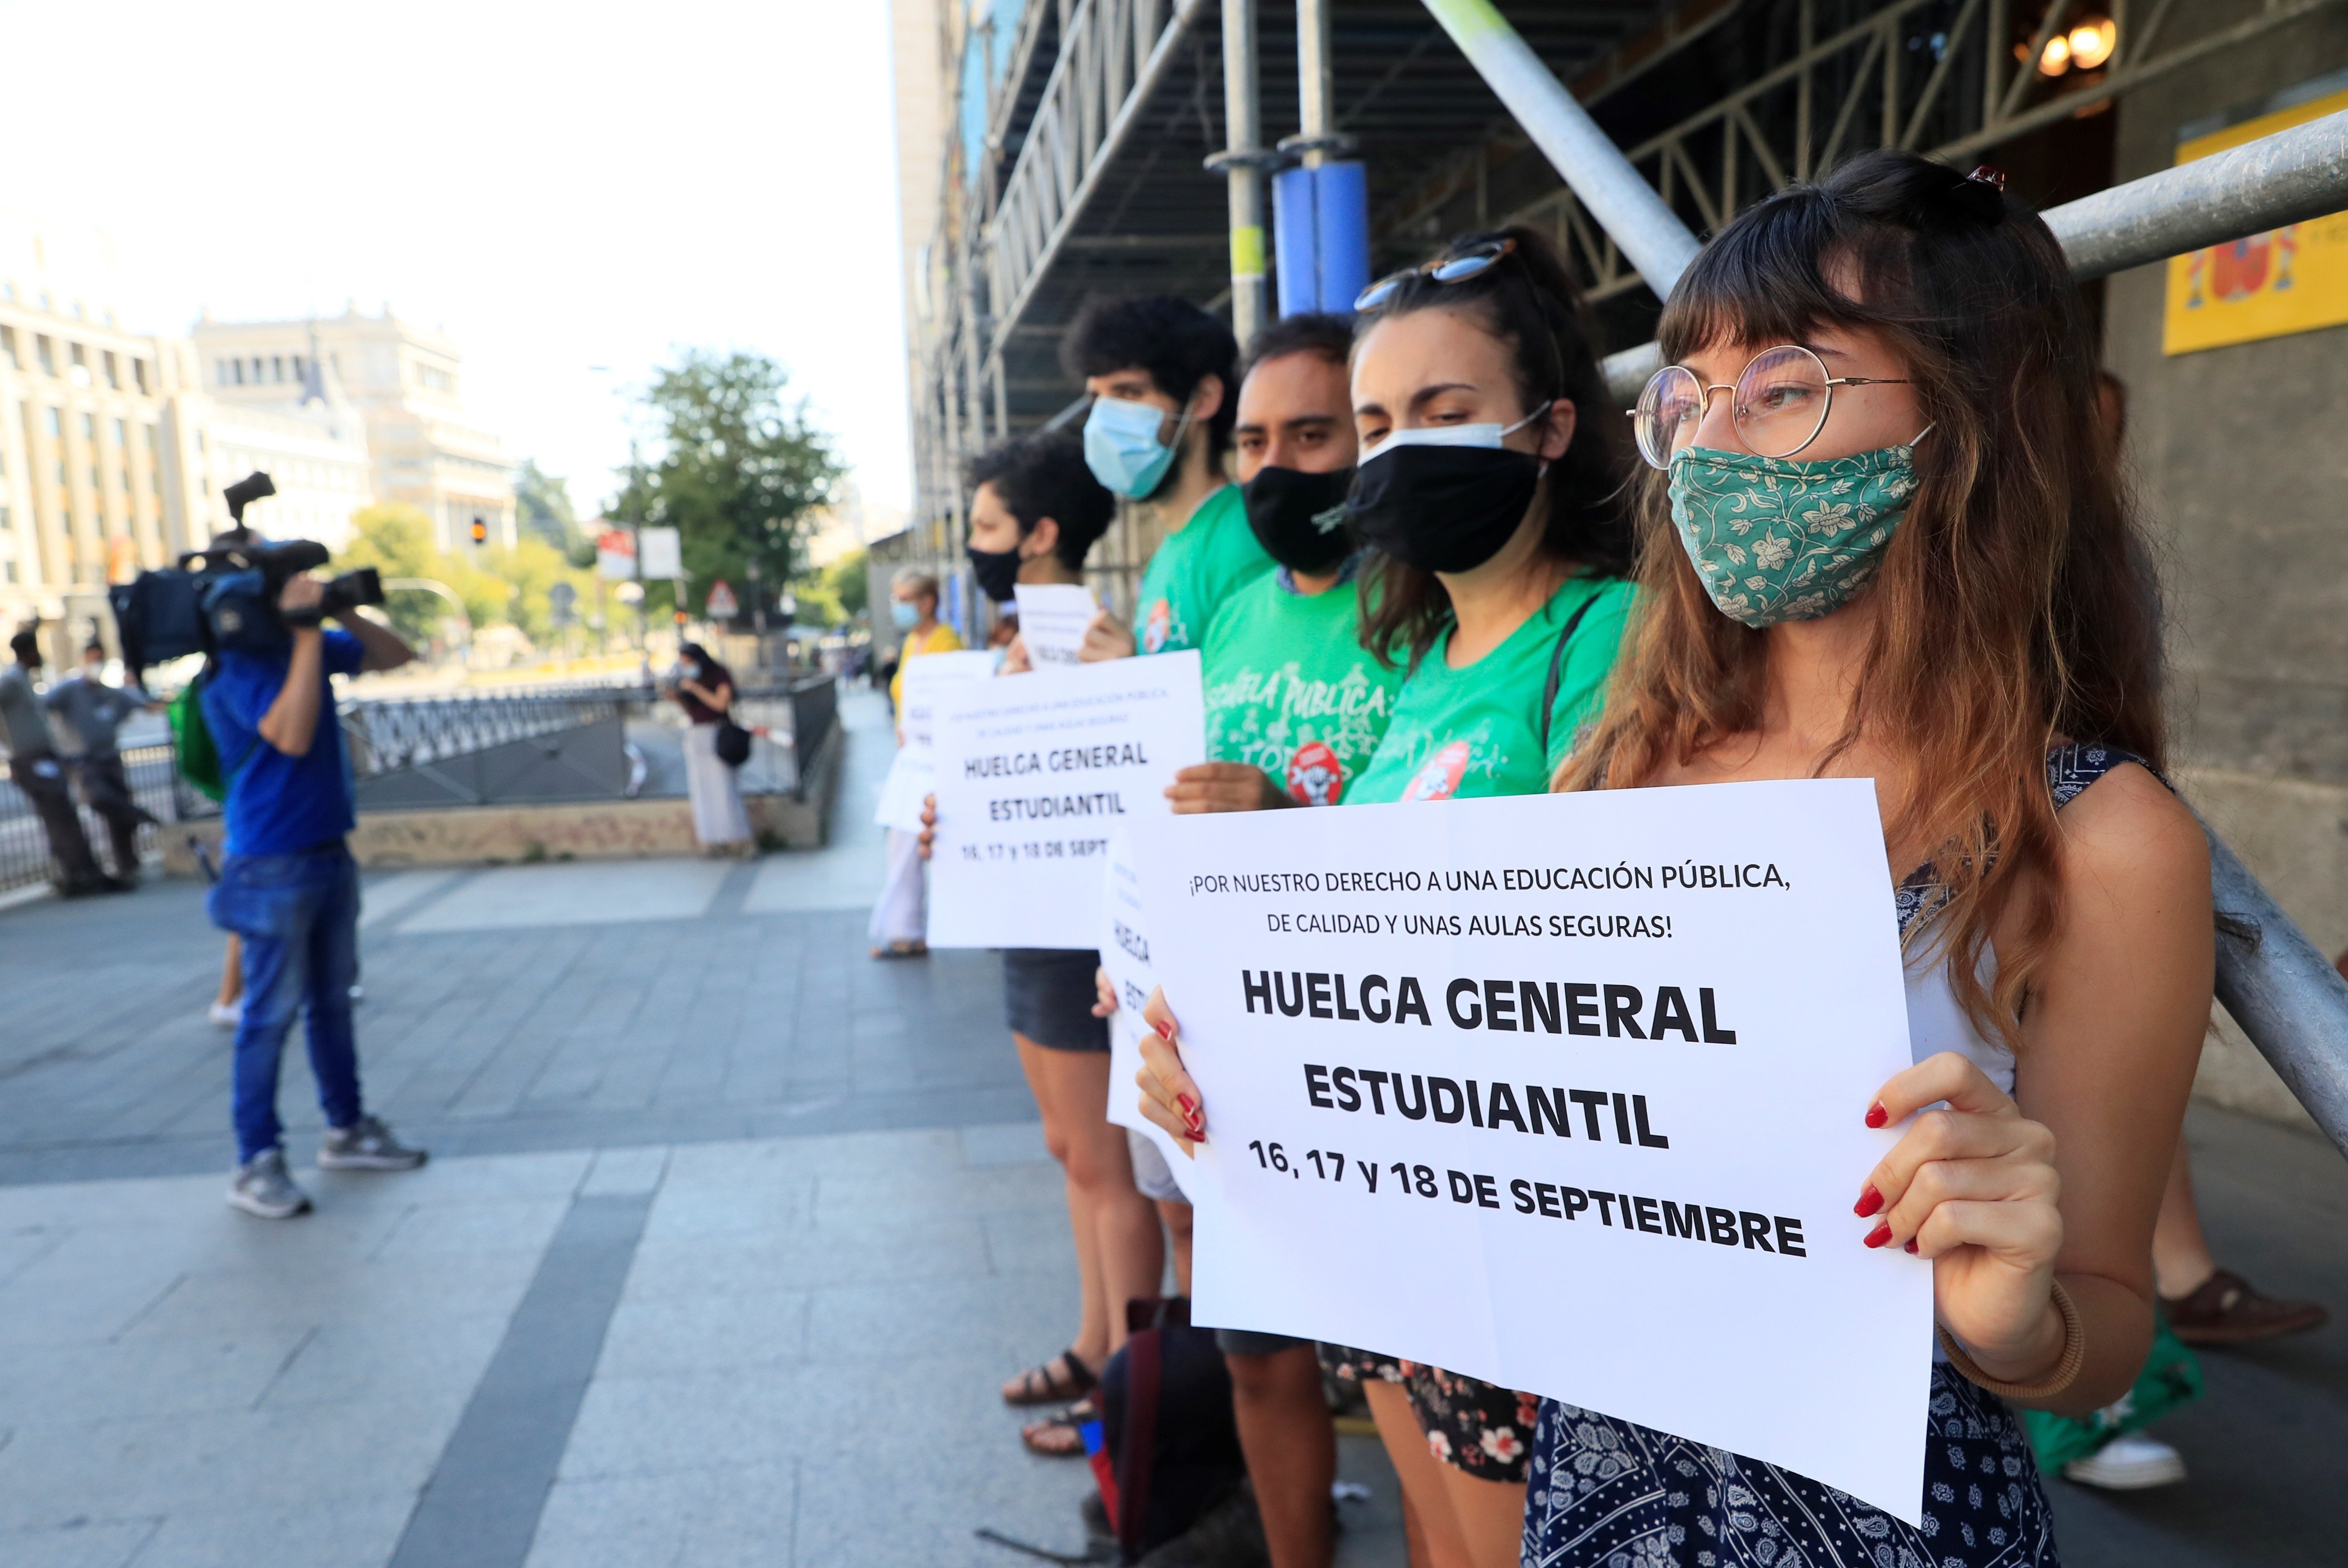 Convocada una huelga de estudiantes del 16 al 18 de septiembre en toda España